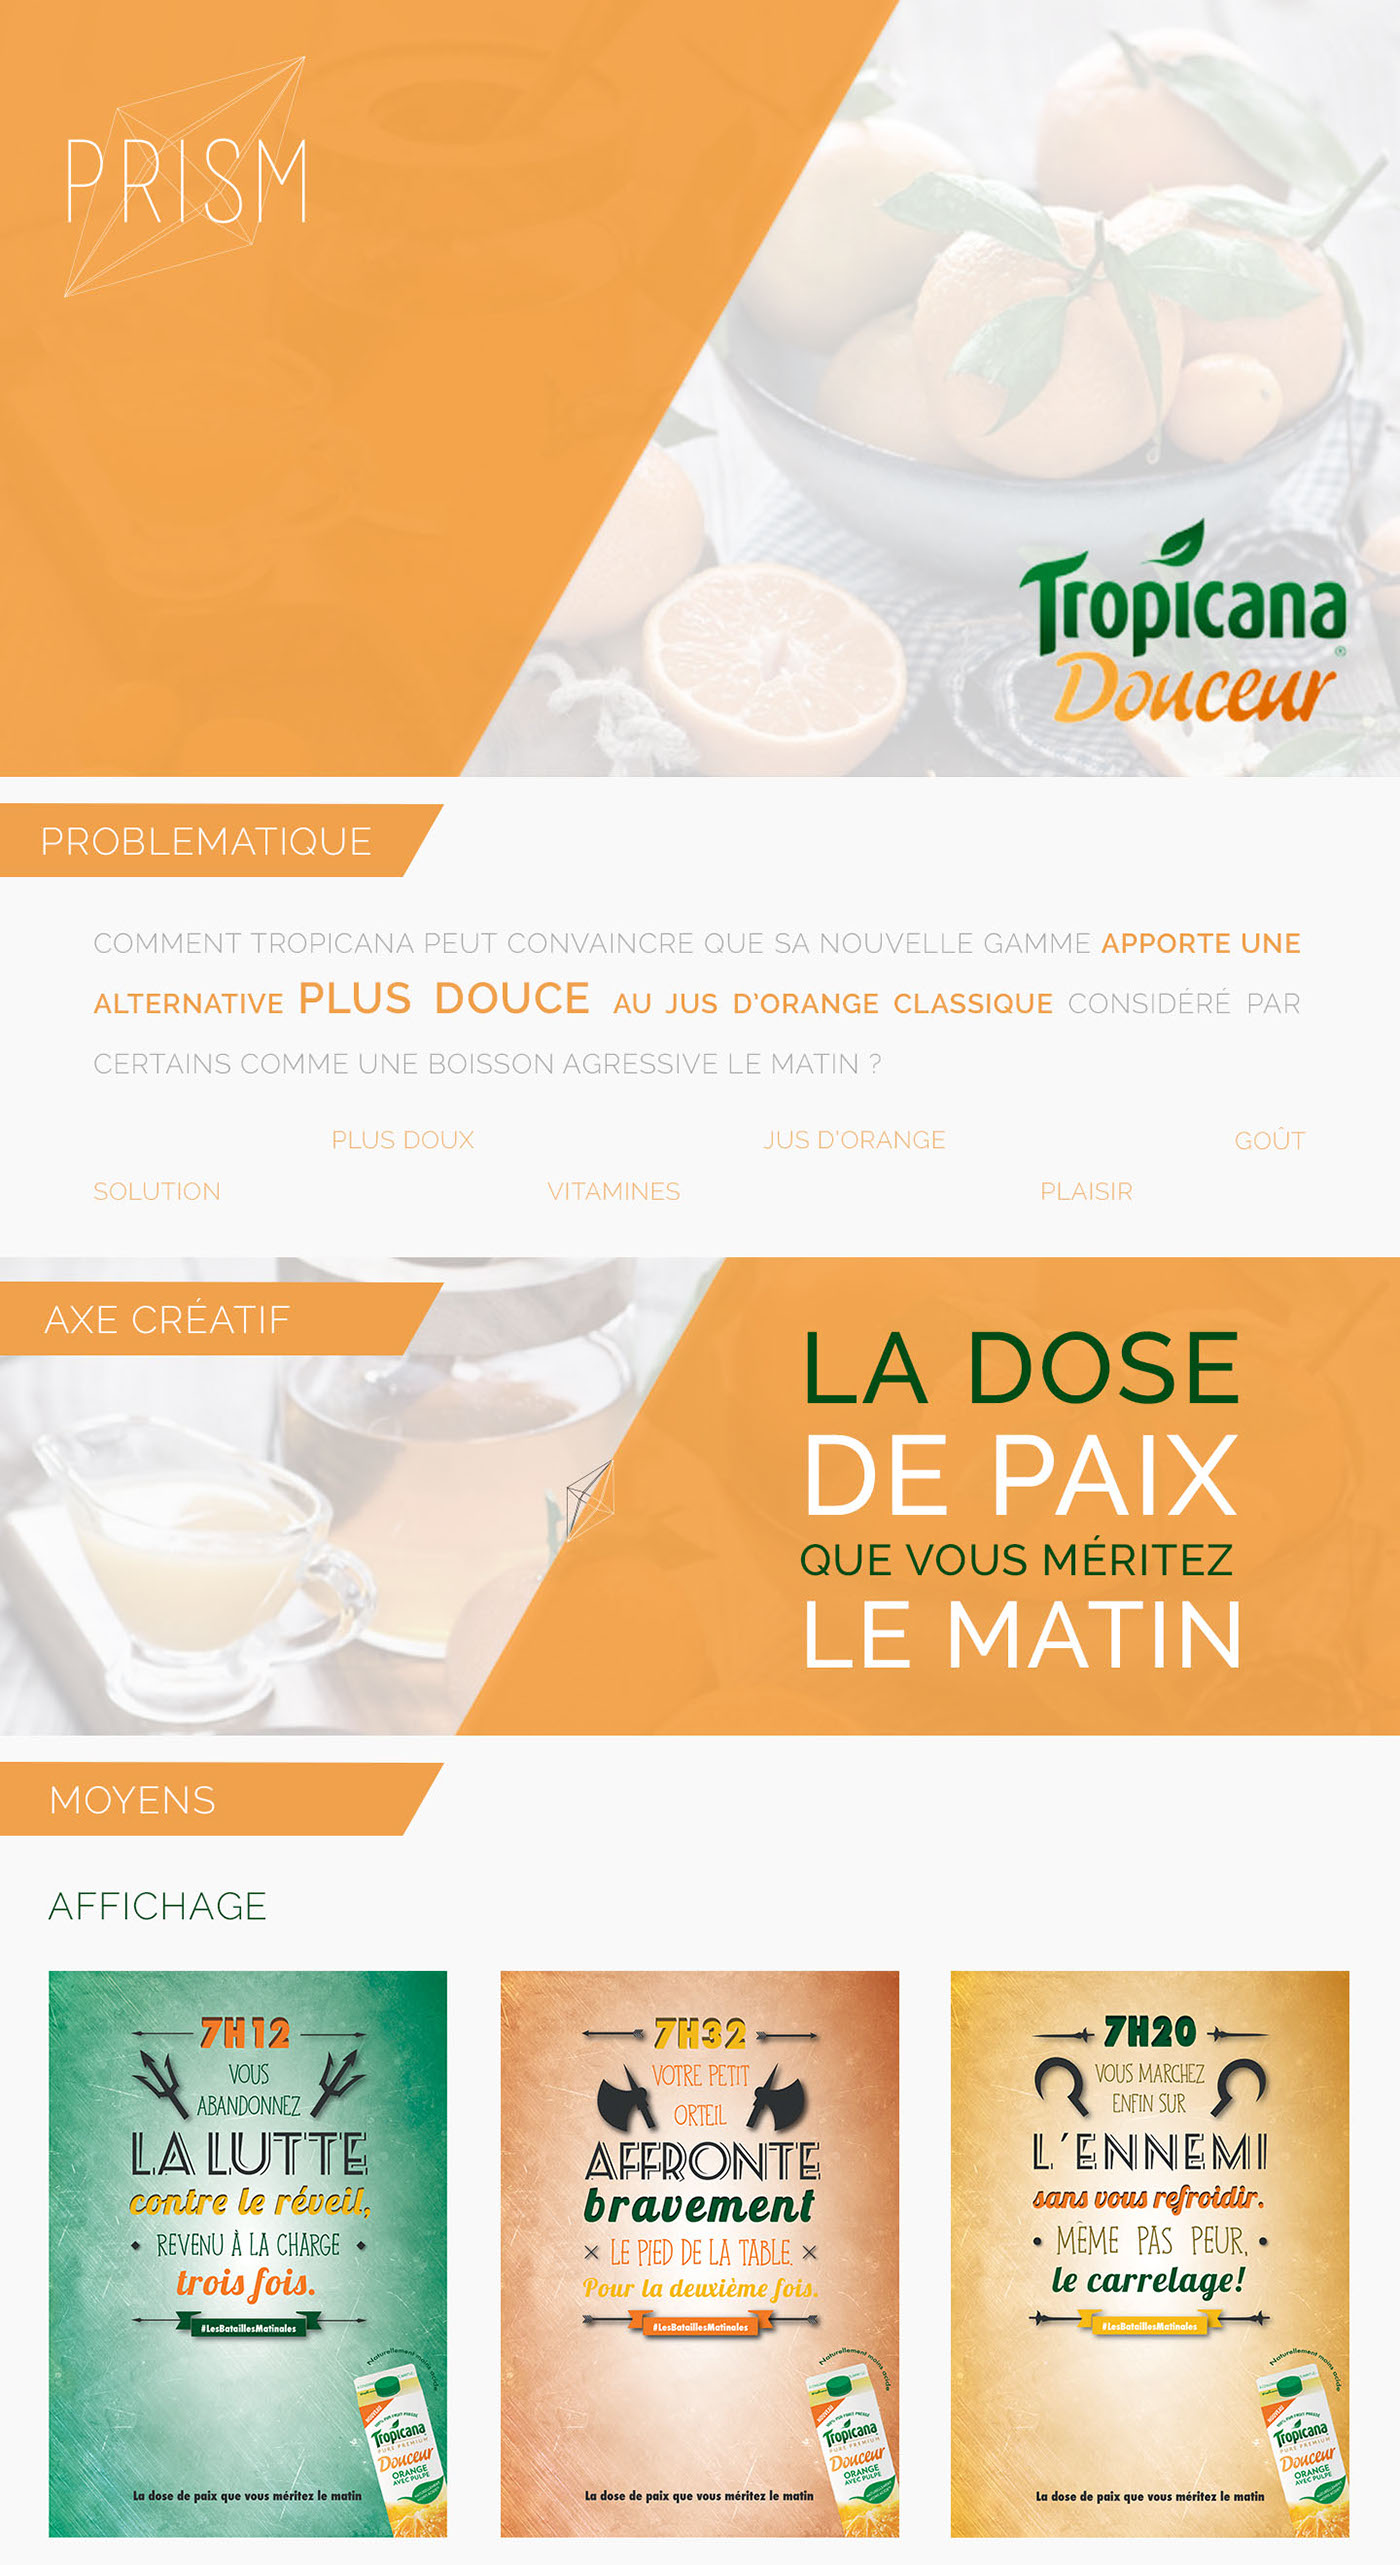 Tropicana sup de pub sweet douceur juice orange Fruit Competition Web digital prism campagne app motion design